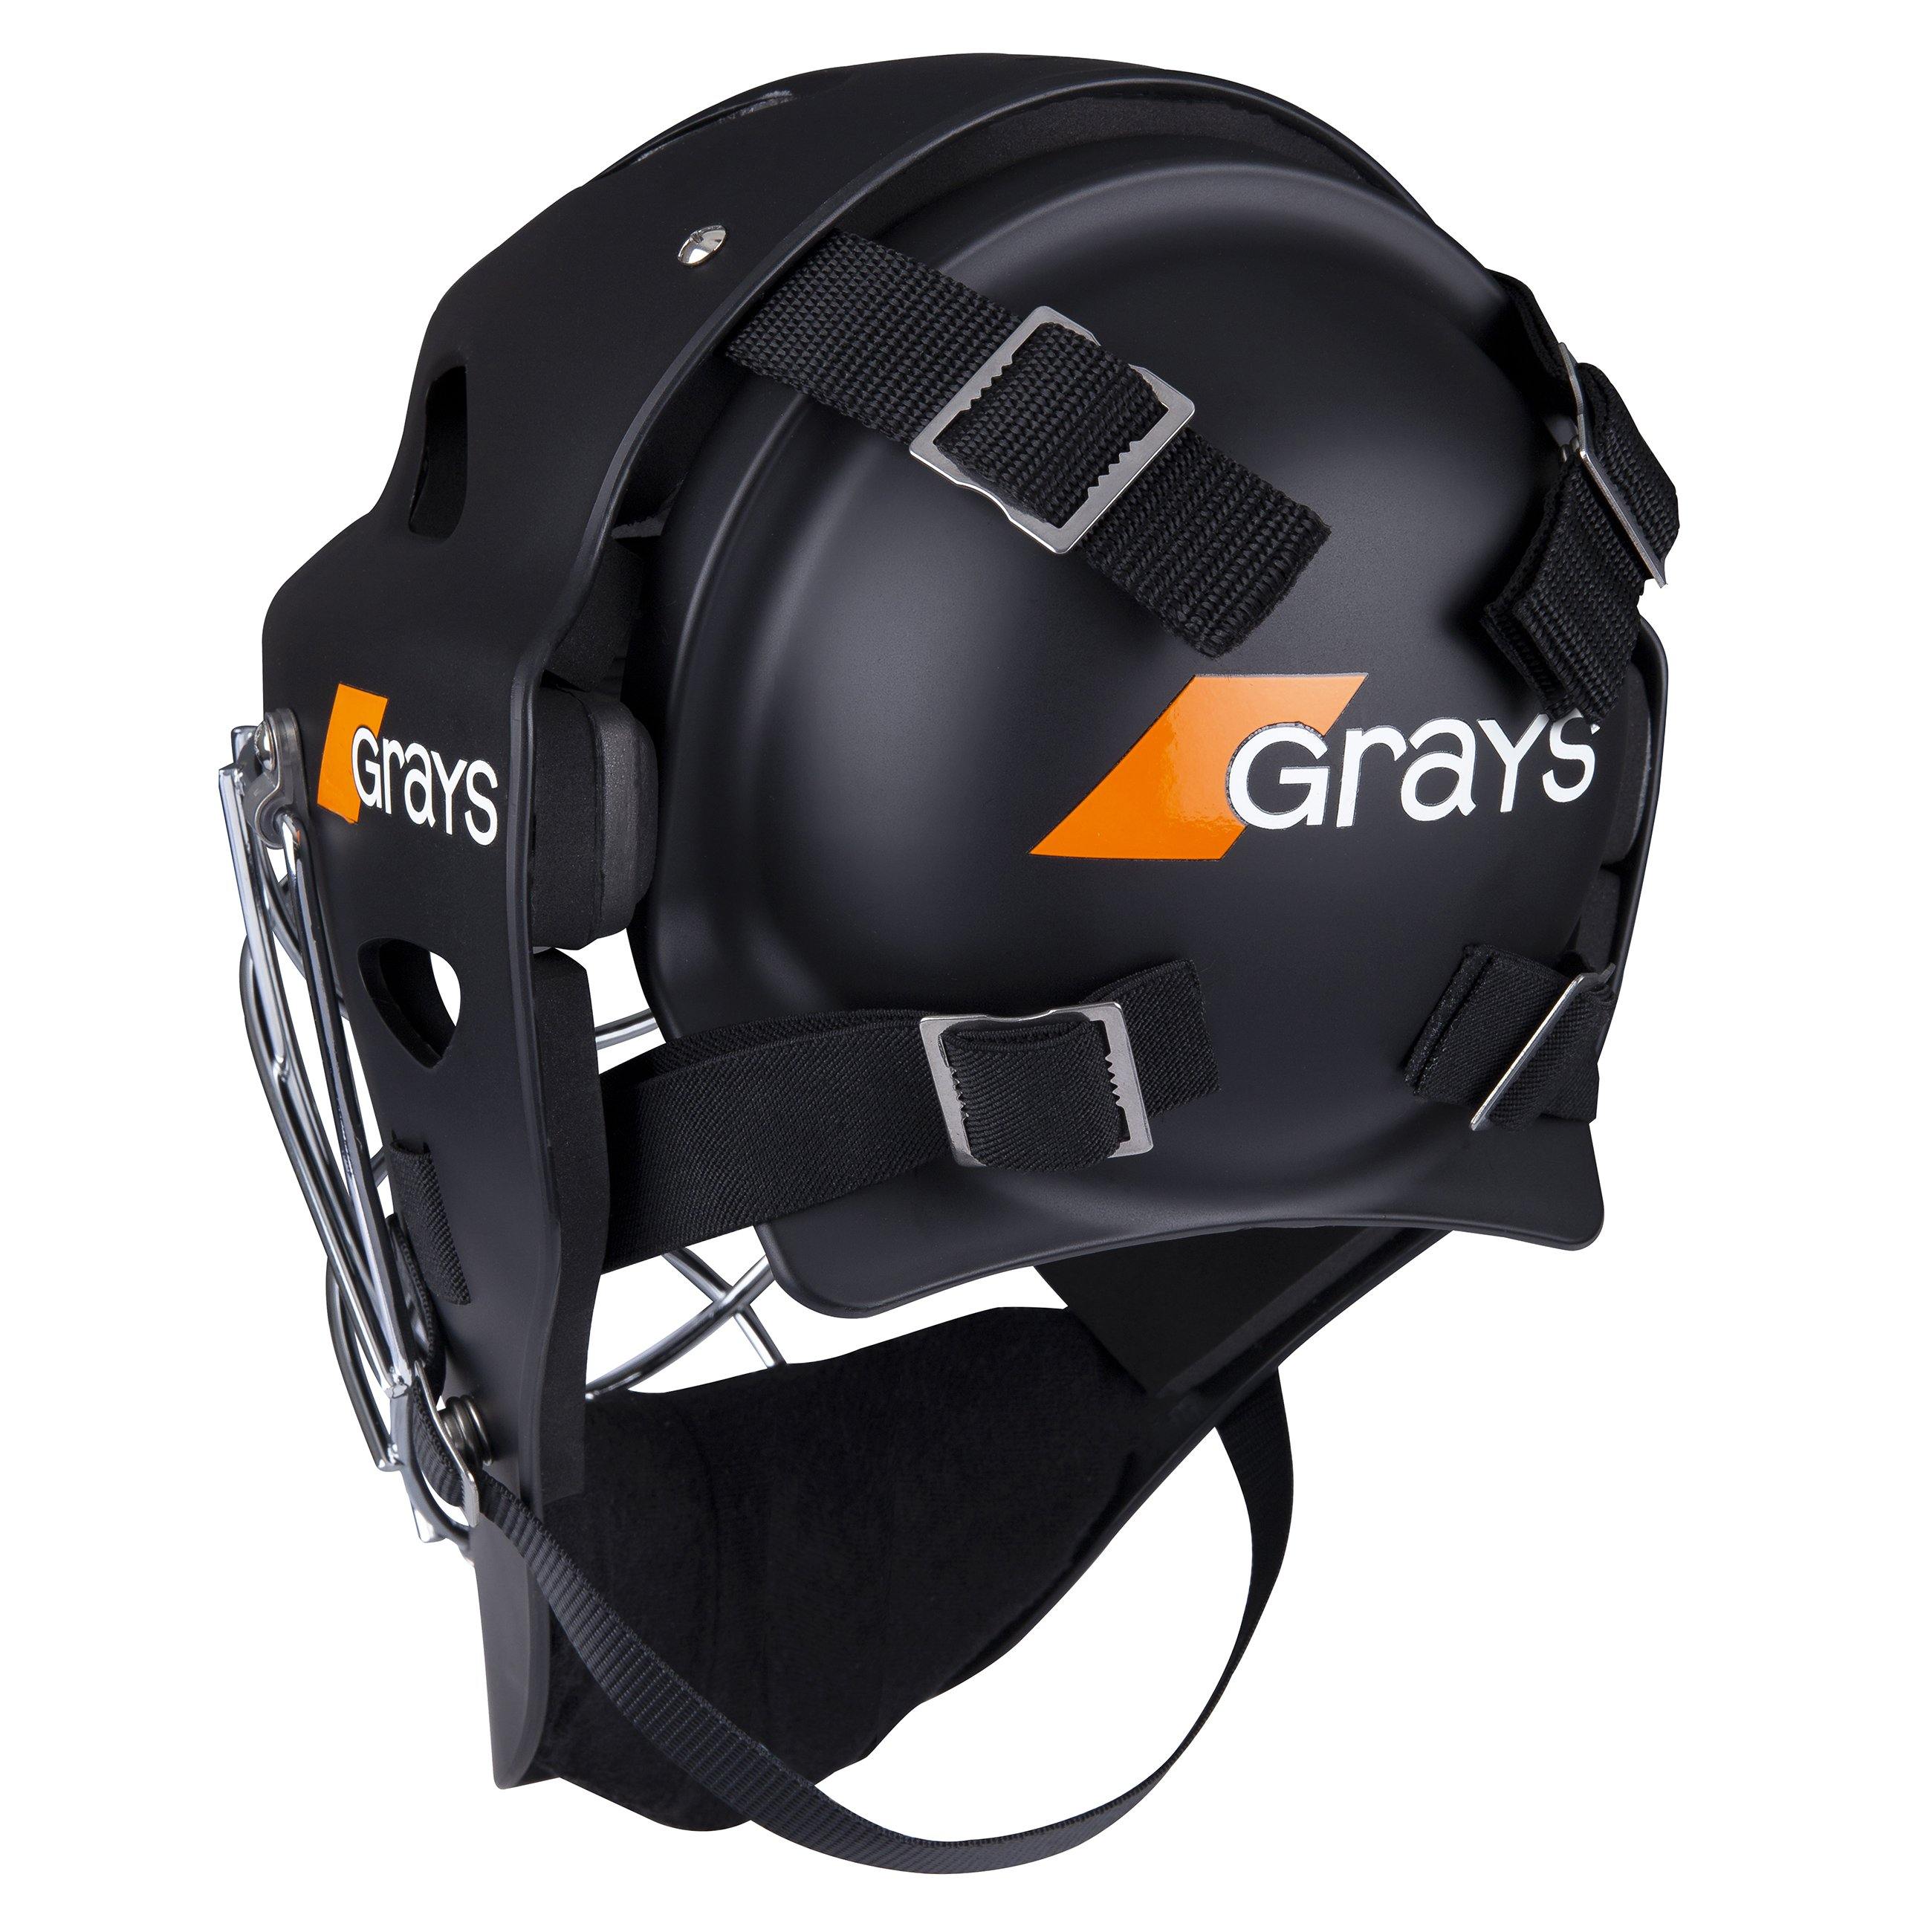 Grays G600 Helmet Black/Chrome